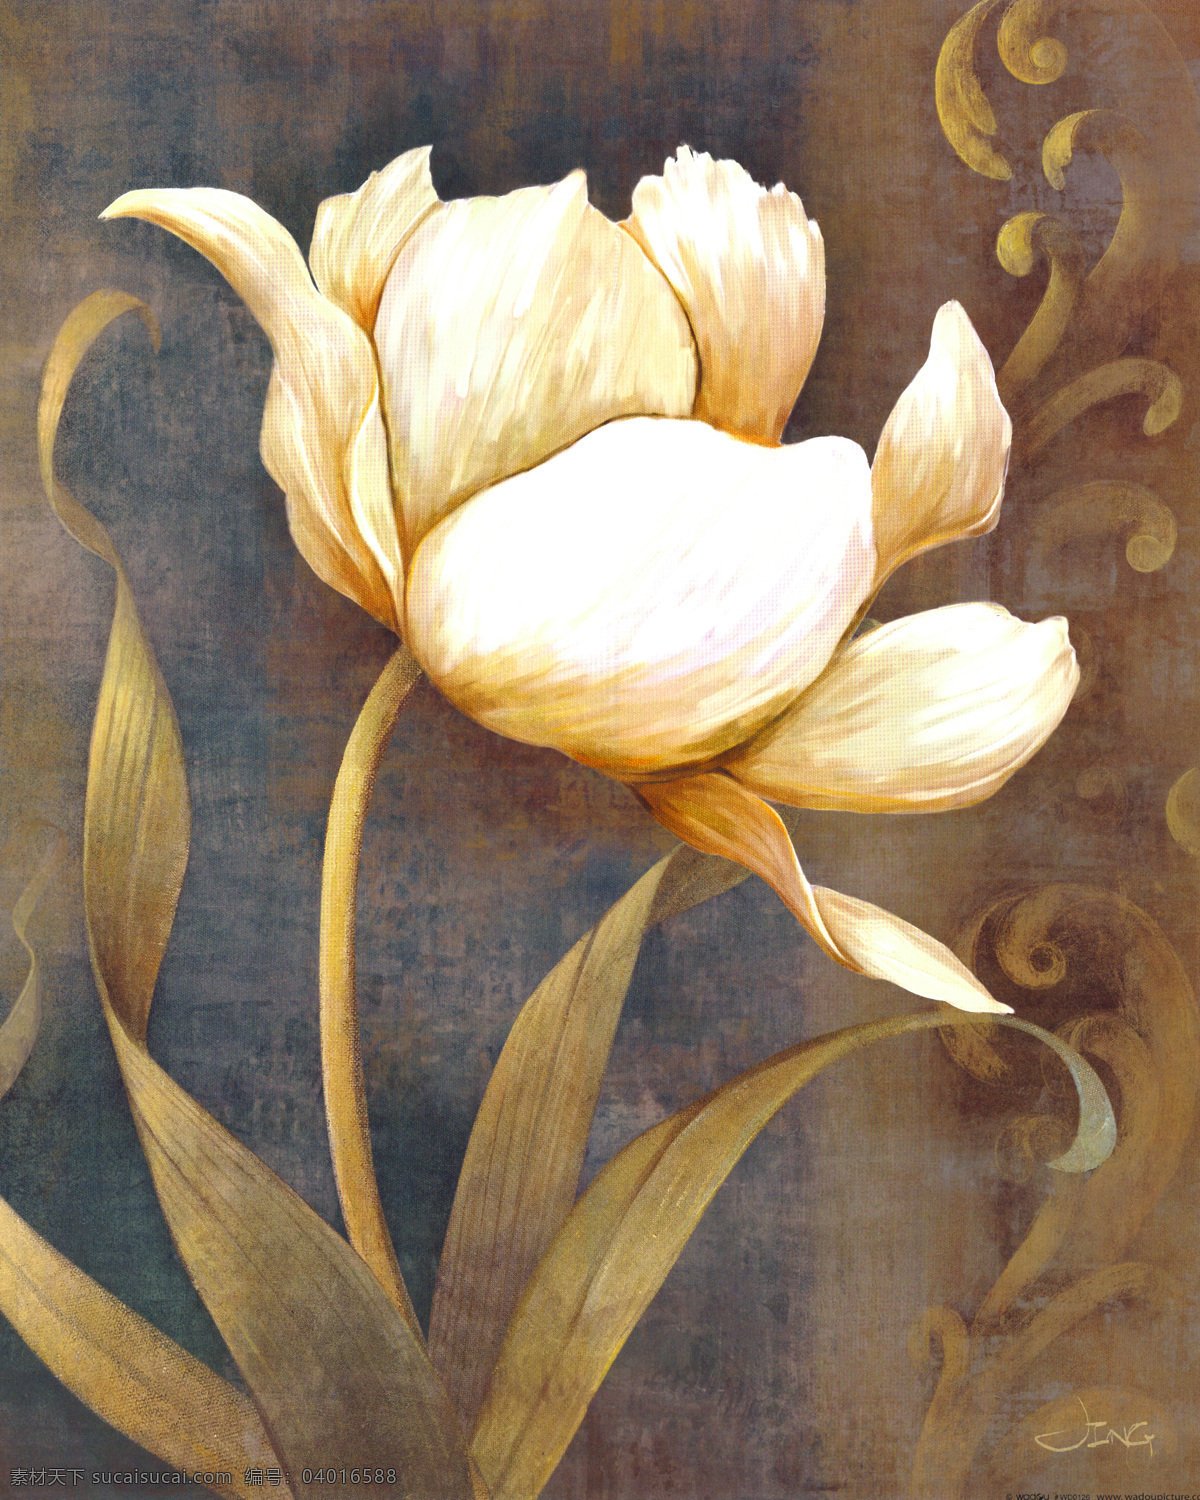 抽象 花草 花卉素材 绘画书法 手绘油画 文化艺术 油画 油画花草 花卉 设计素材 模板下载 油画花卉 装饰素材